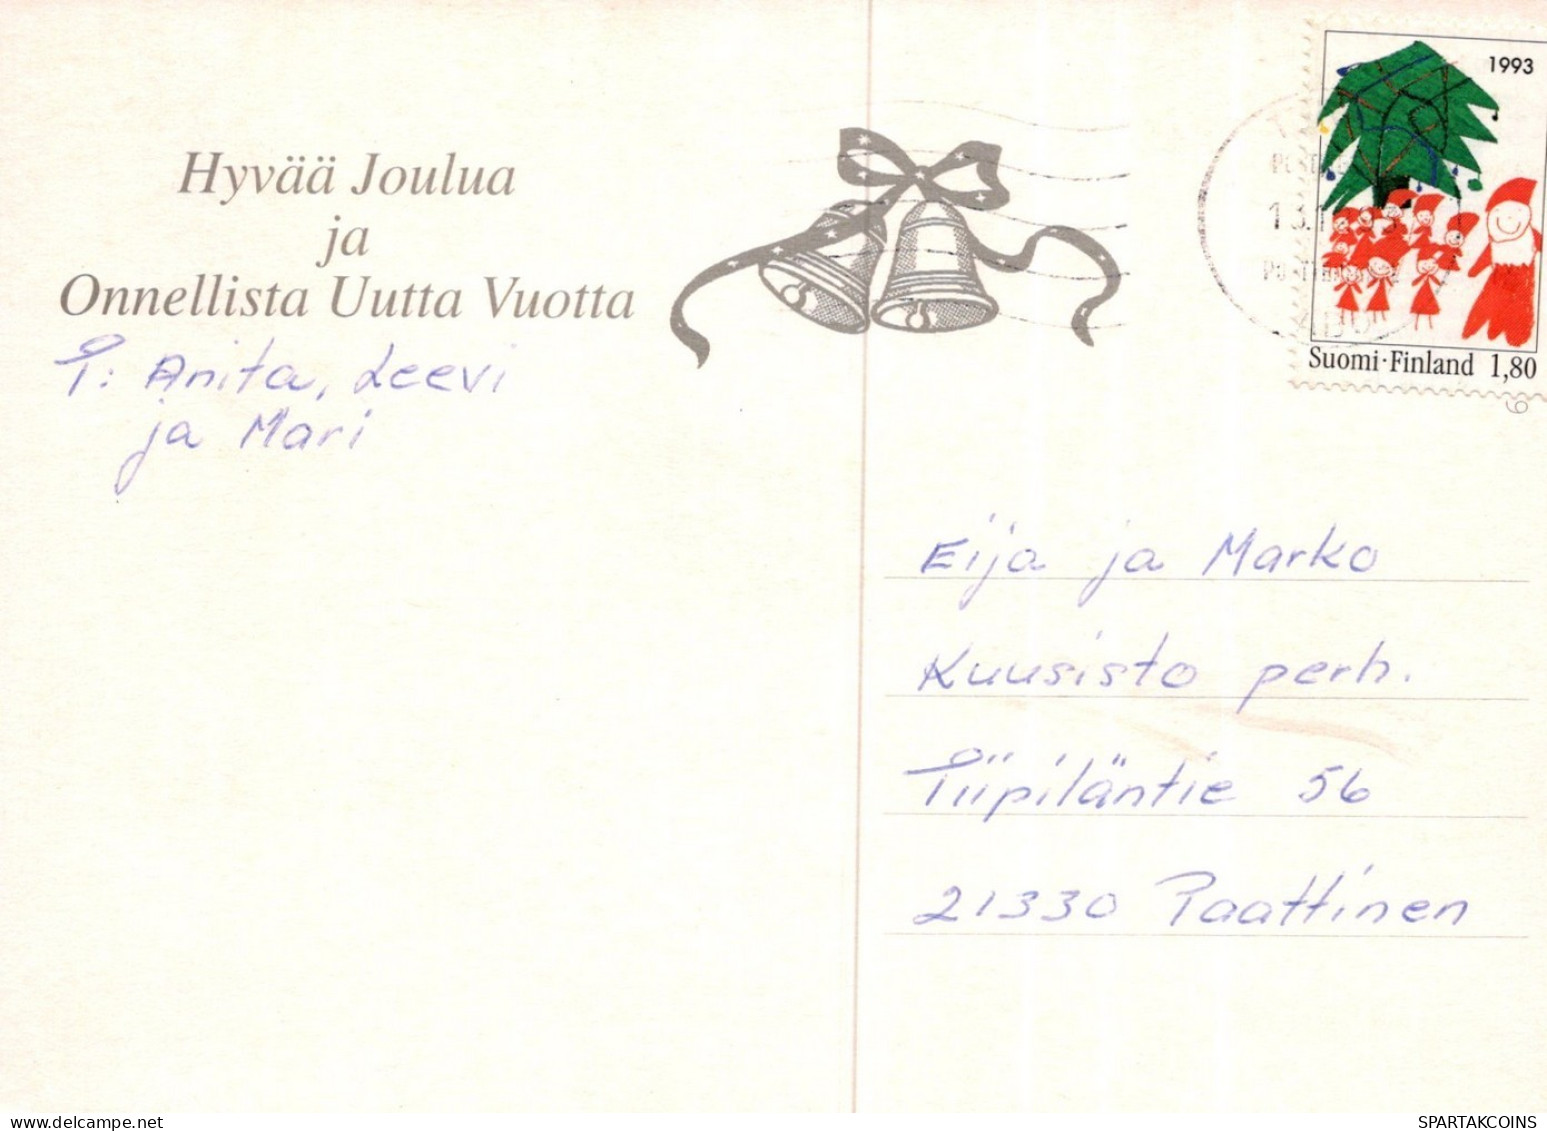 PAPÁ NOEL NIÑO NAVIDAD Fiesta Vintage Tarjeta Postal CPSM #PAK373.ES - Santa Claus